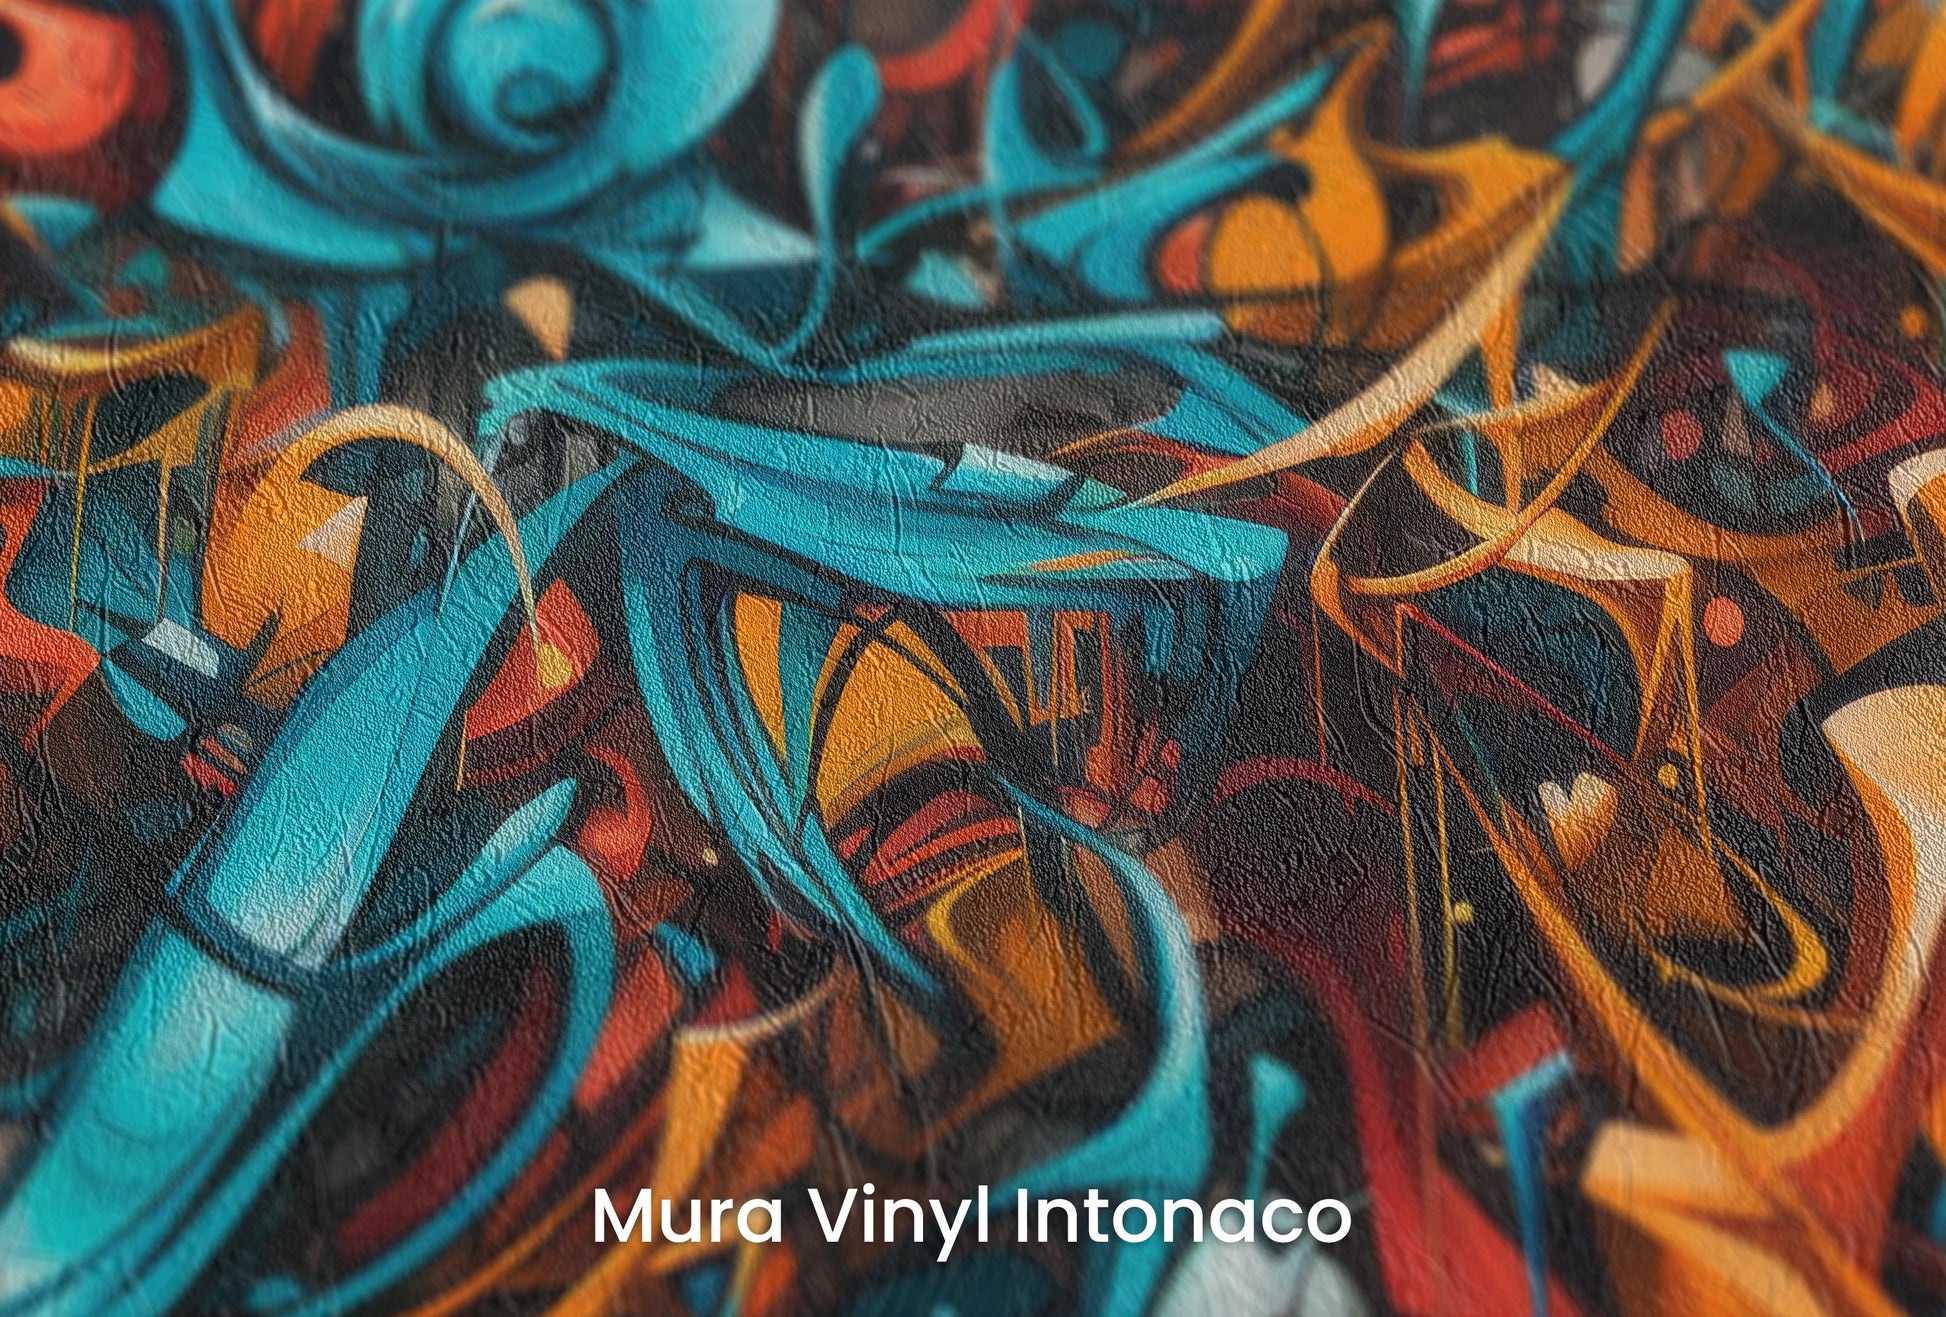 Zbliżenie na artystyczną fototapetę o nazwie Abstract Turmoil na podłożu Mura Vinyl Intonaco - struktura tartego tynku.